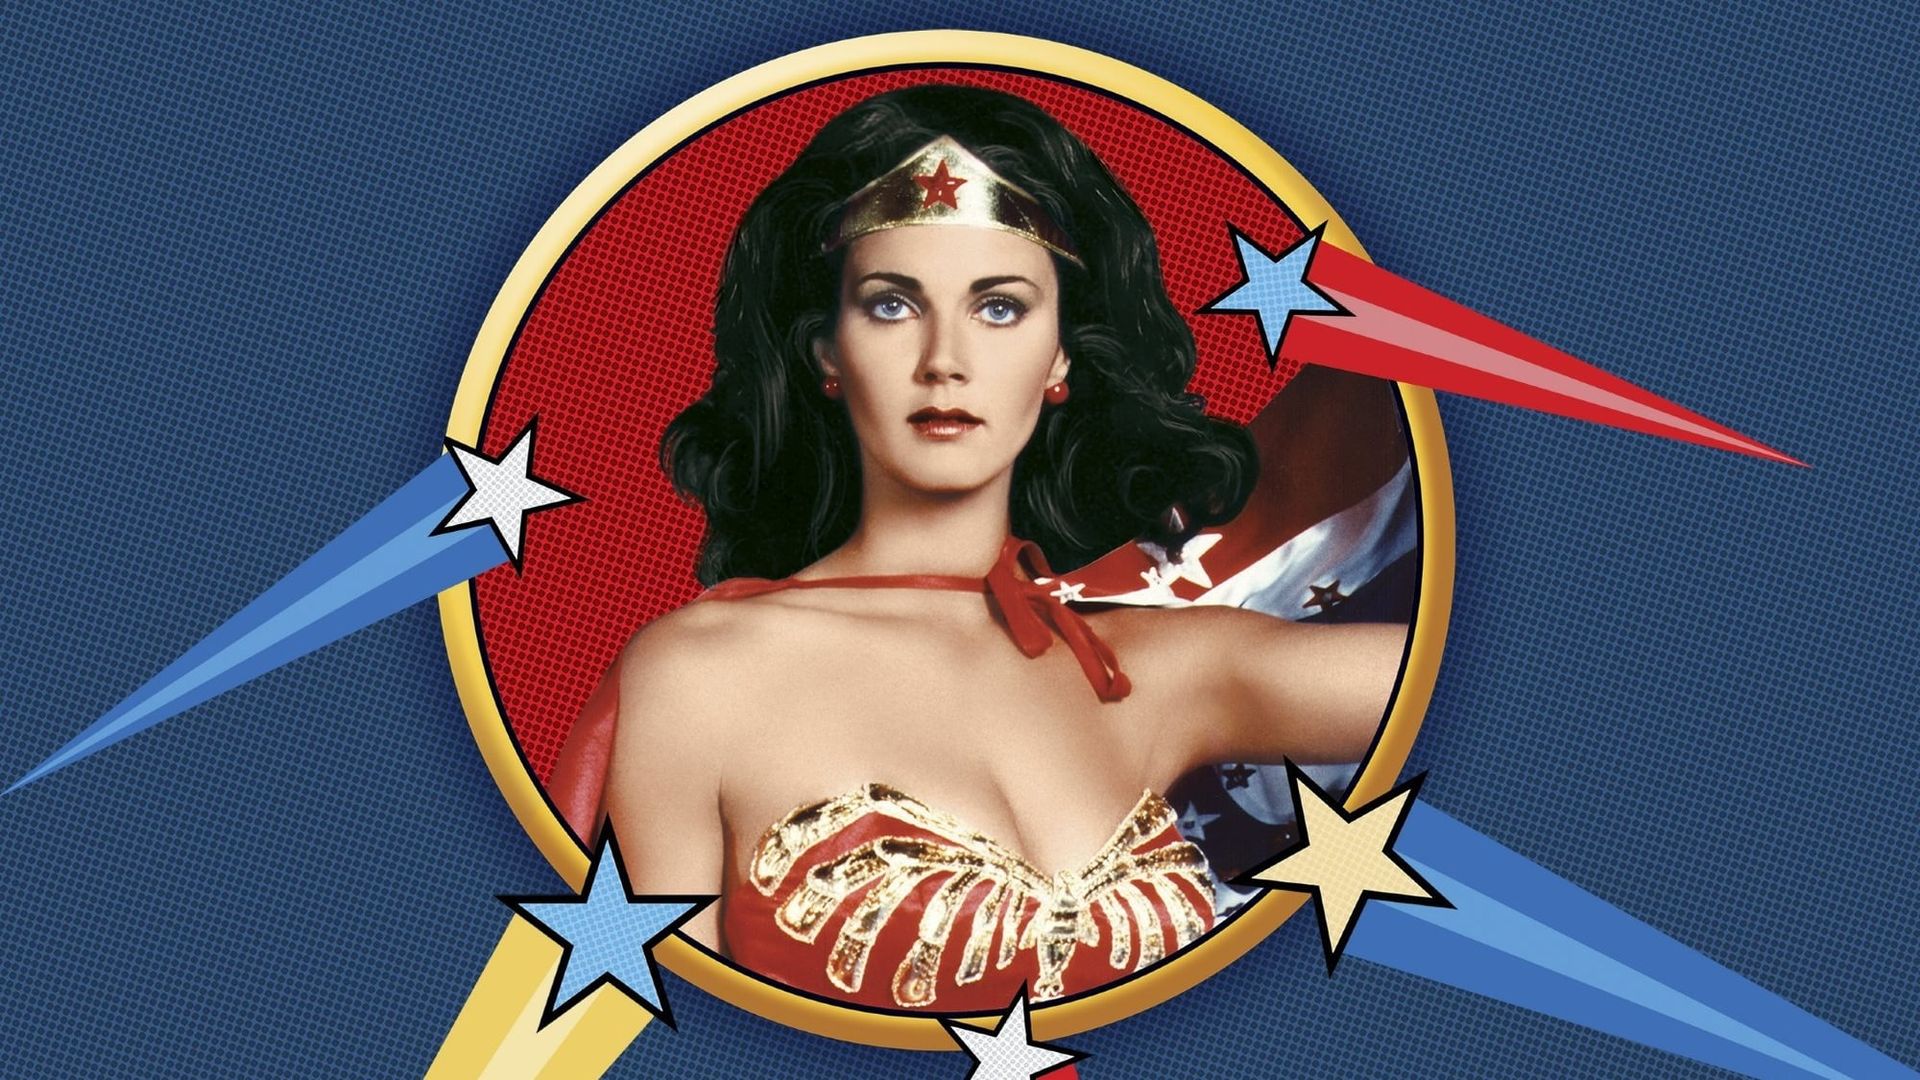 Wonder Woman background